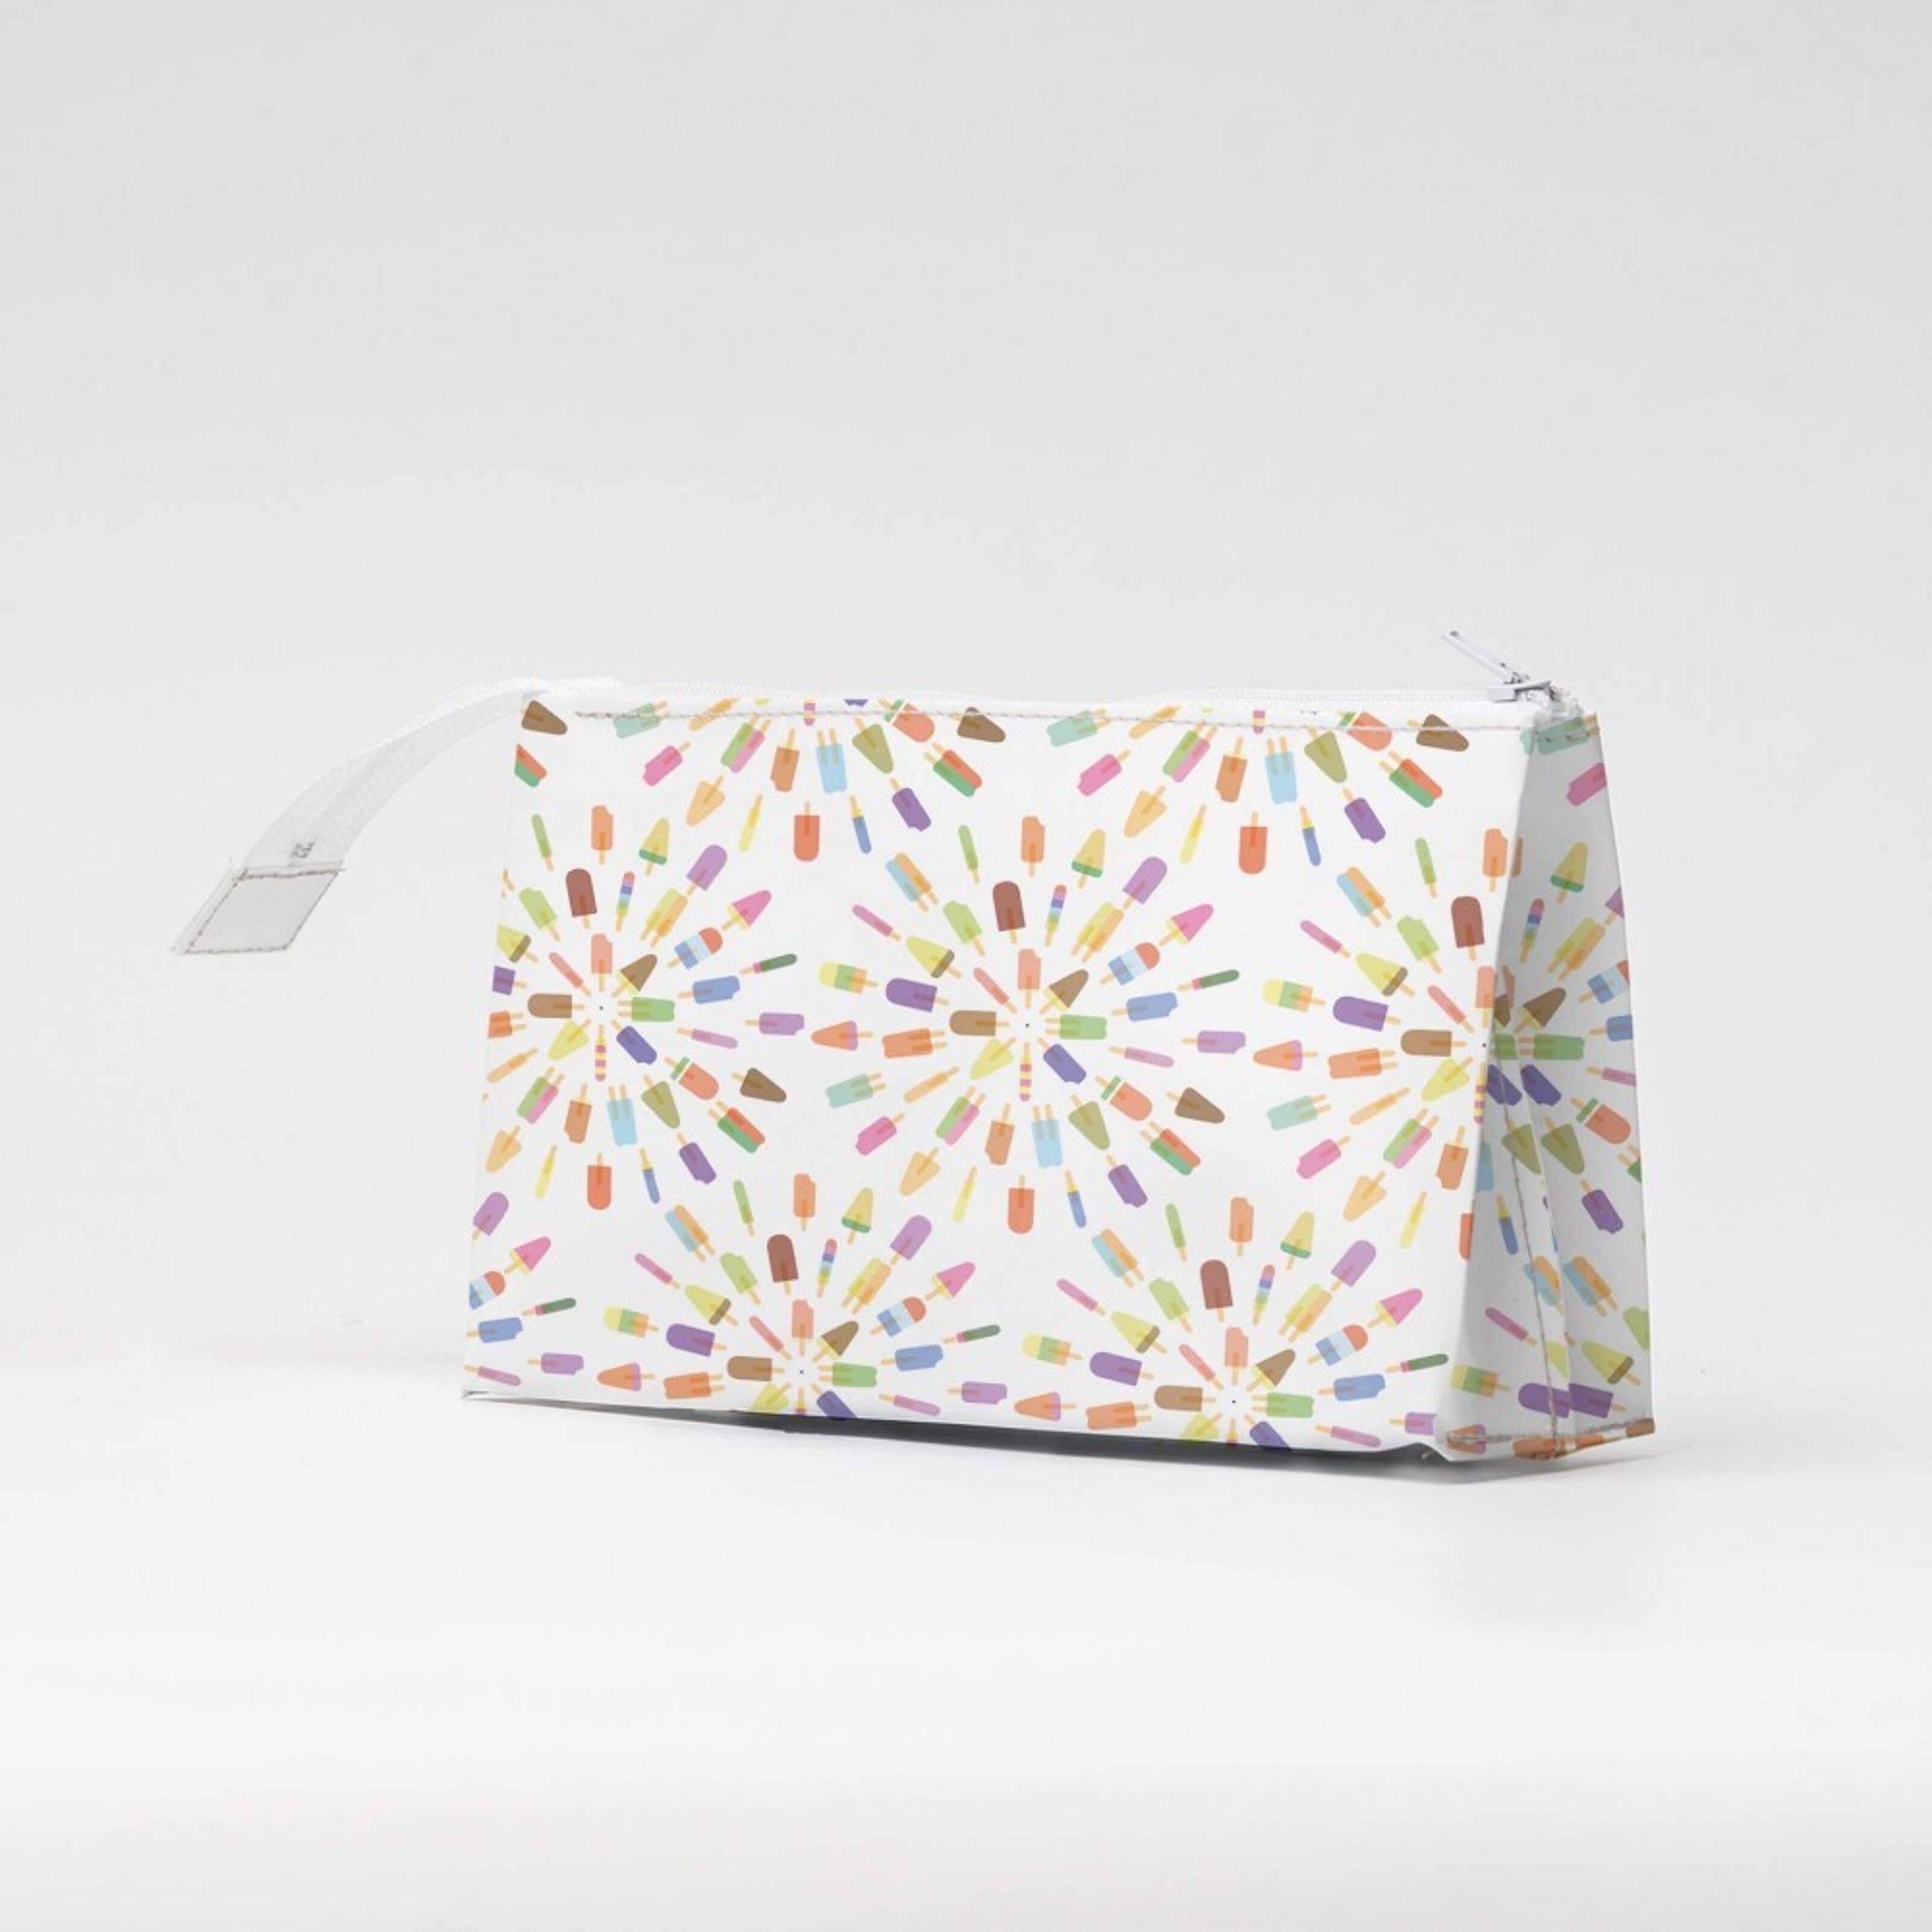 Motif Einkaufstasche marsala with white pattern - Shopper aus 70%  recyceltem Plastik